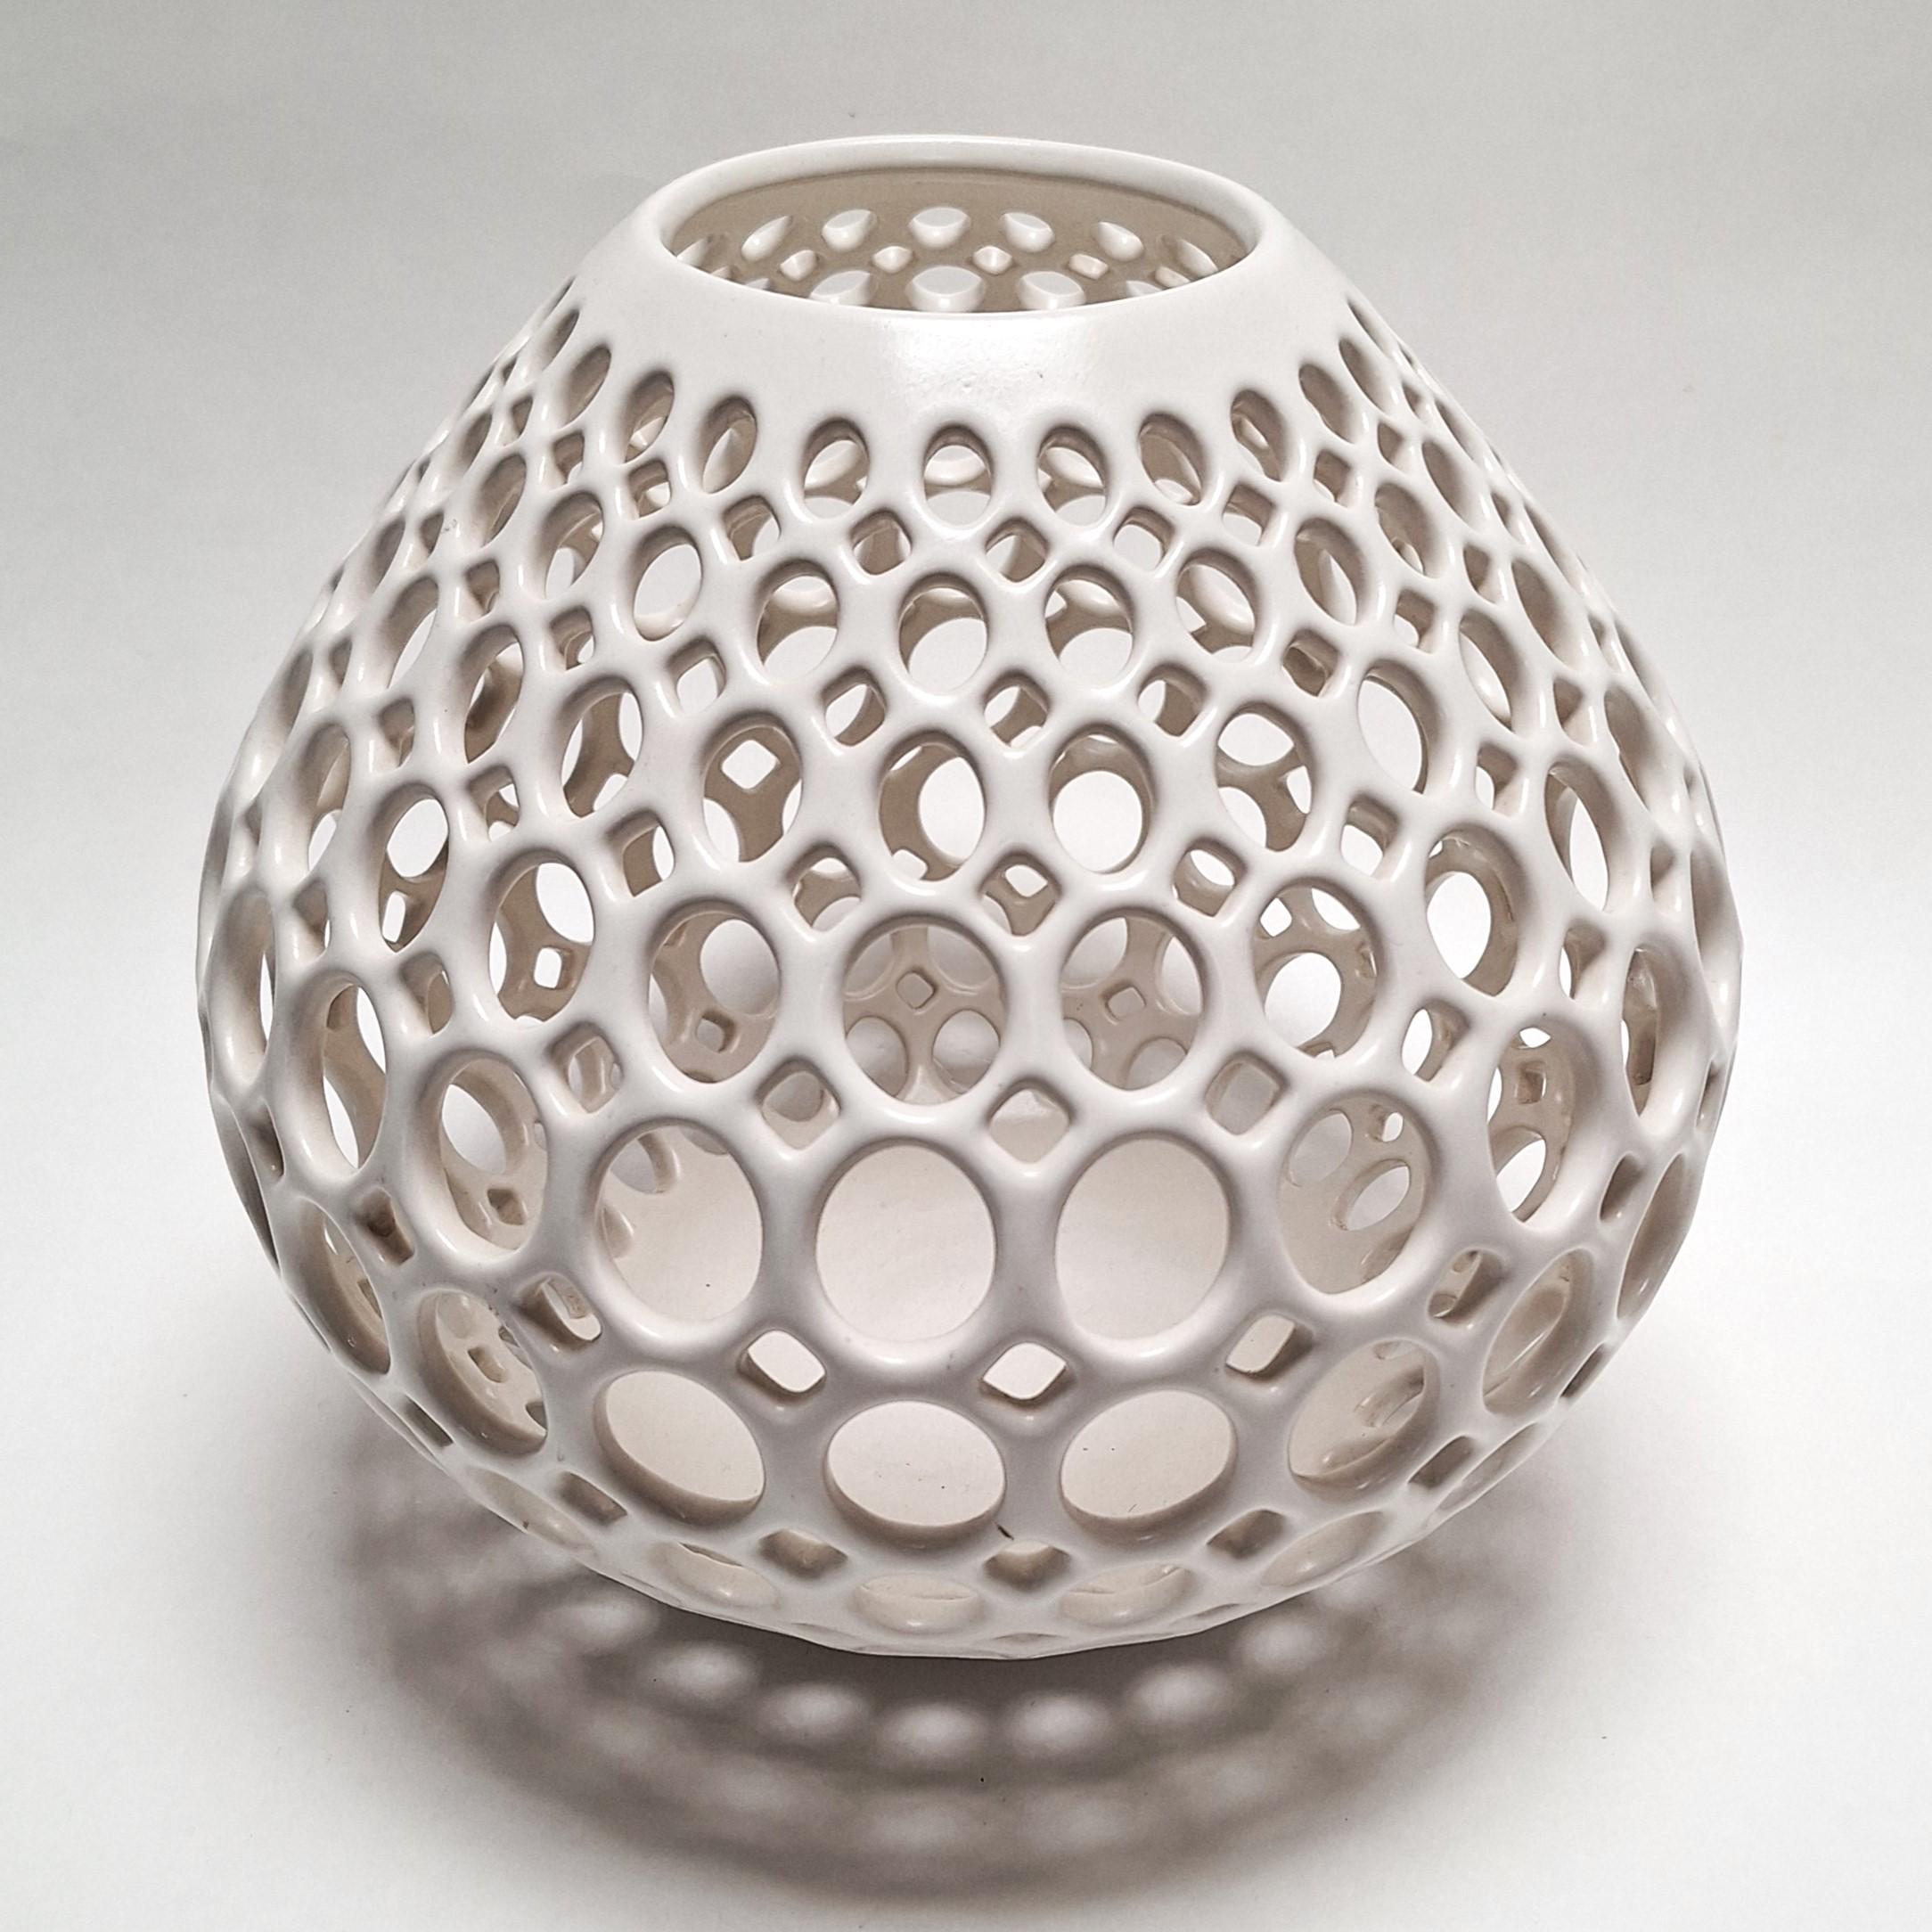 Teardrop Oval Lace White - contemporary modern ceramic vessel object - Art by Lynne Meade